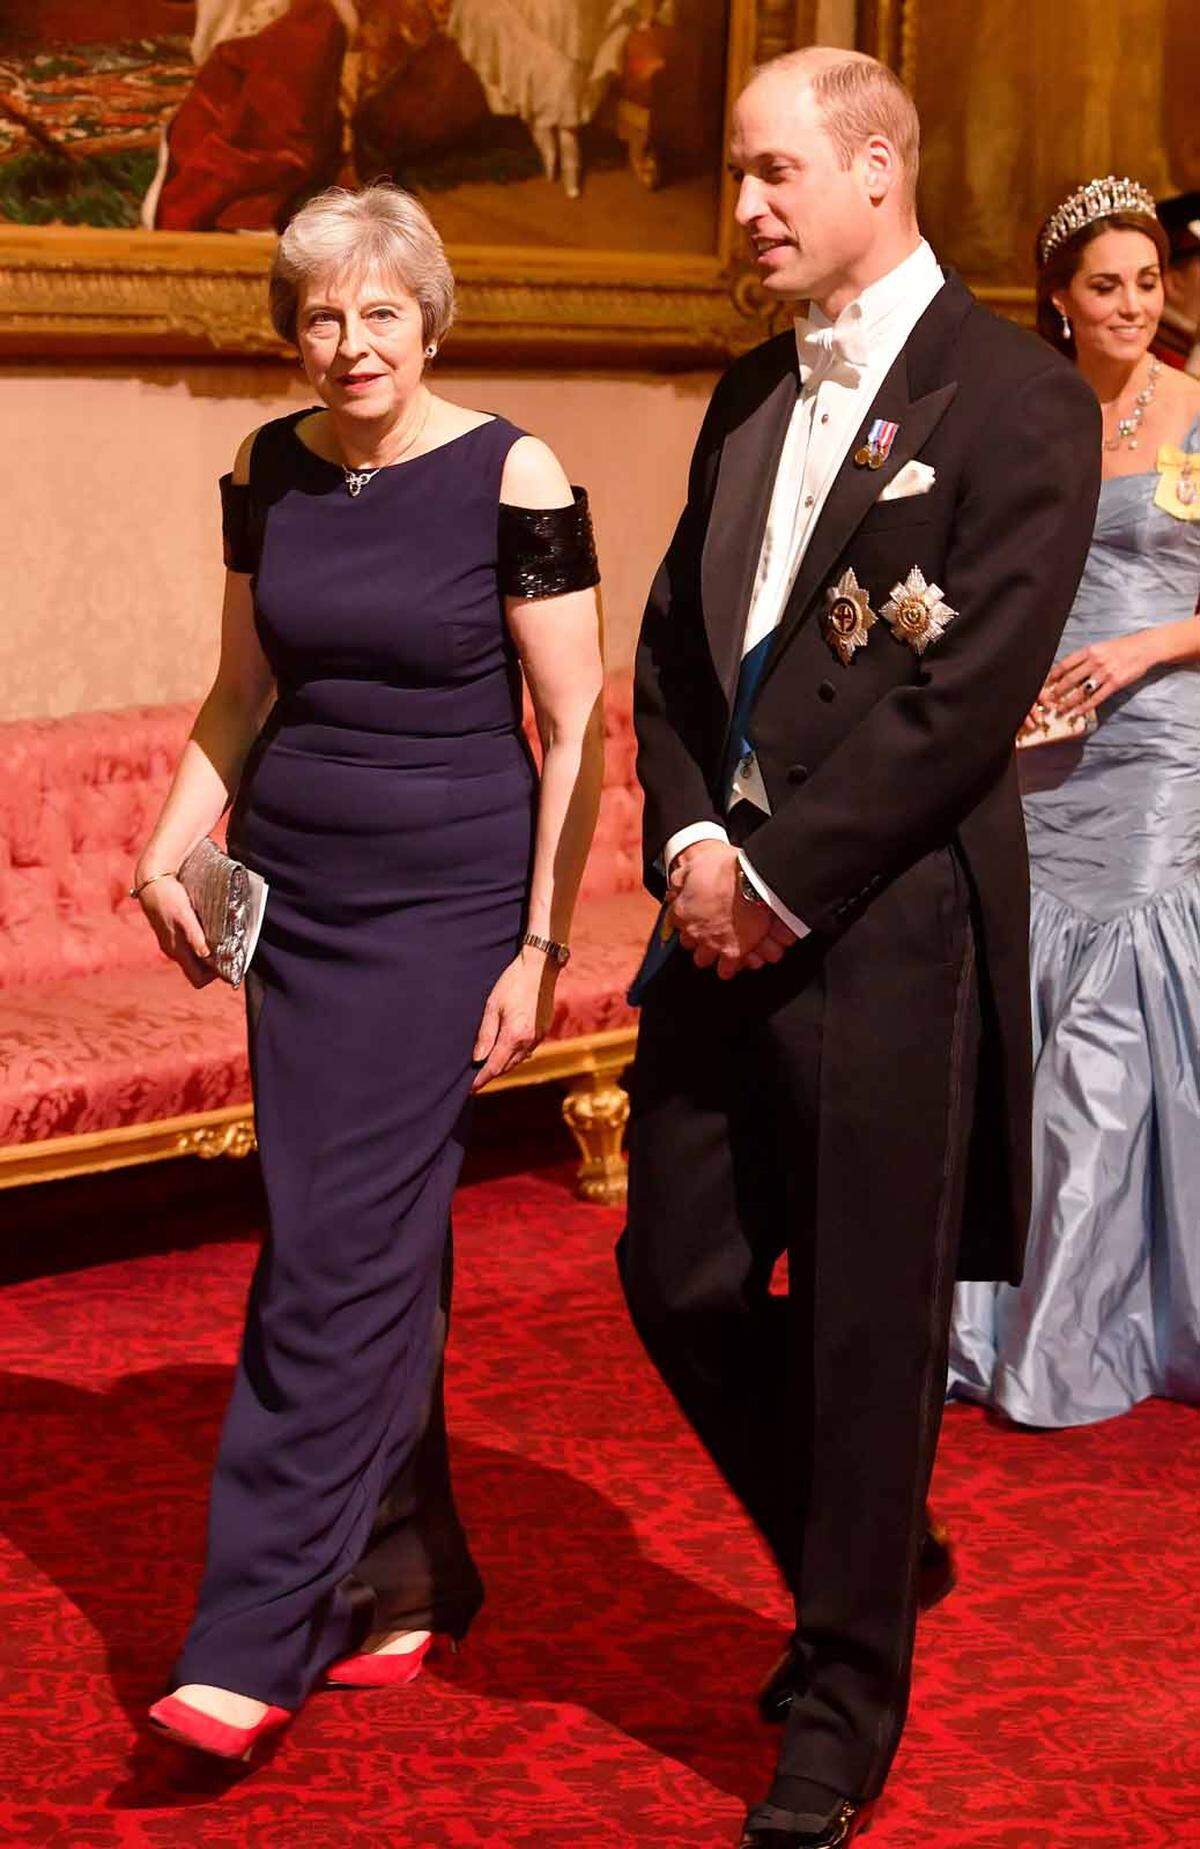 Großbritanniens Premierministerin Theresa May an der Seite von Prinz William. Ihren Wagemut erkennt man wie üblich am Schuhwerk.